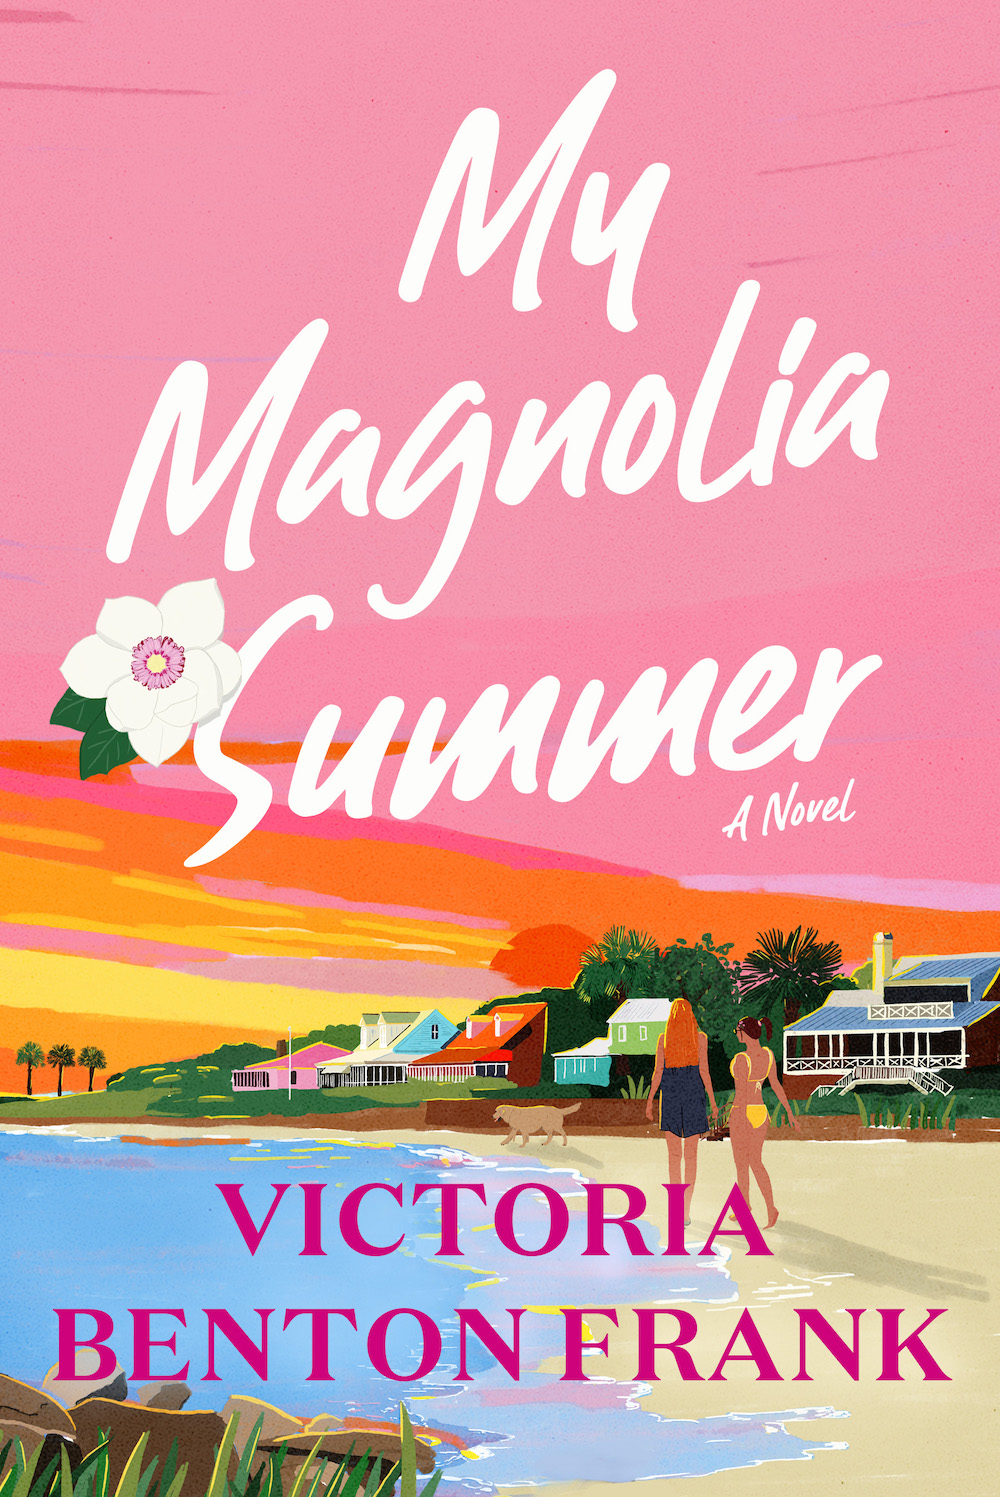 my magnolia summer book tour